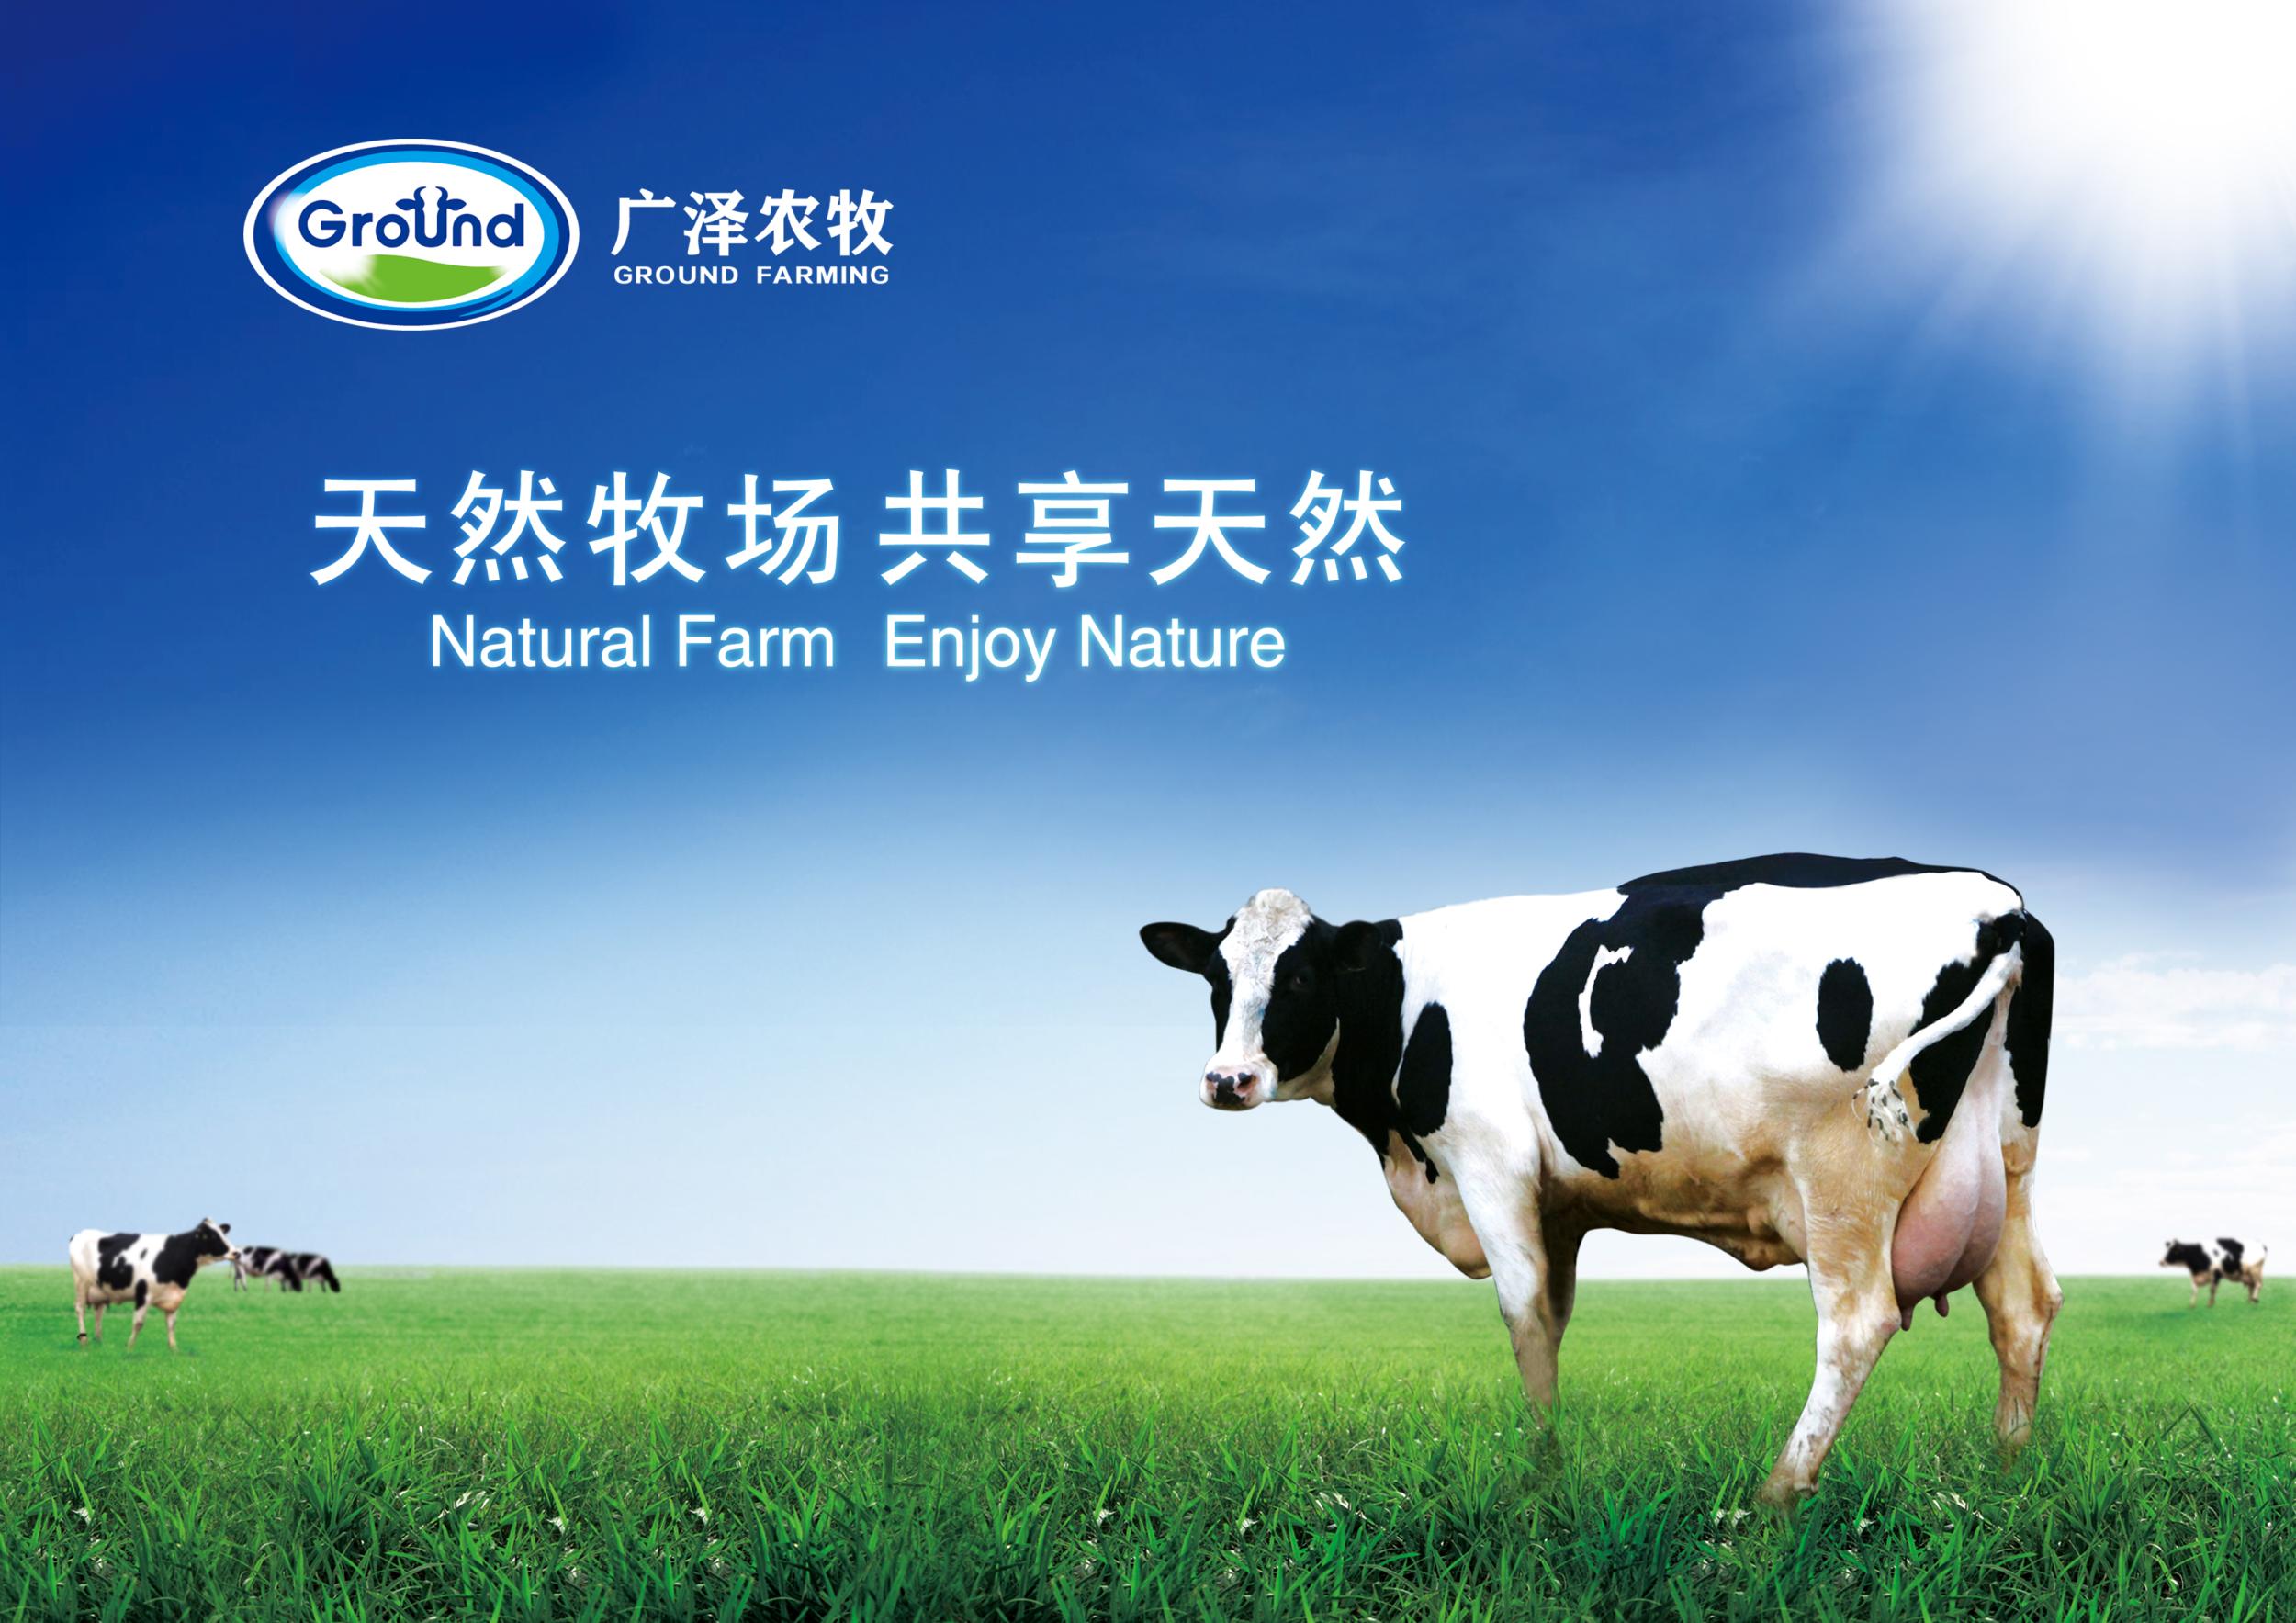 月的吉林省乳业集团广泽有限公司(以下简称广